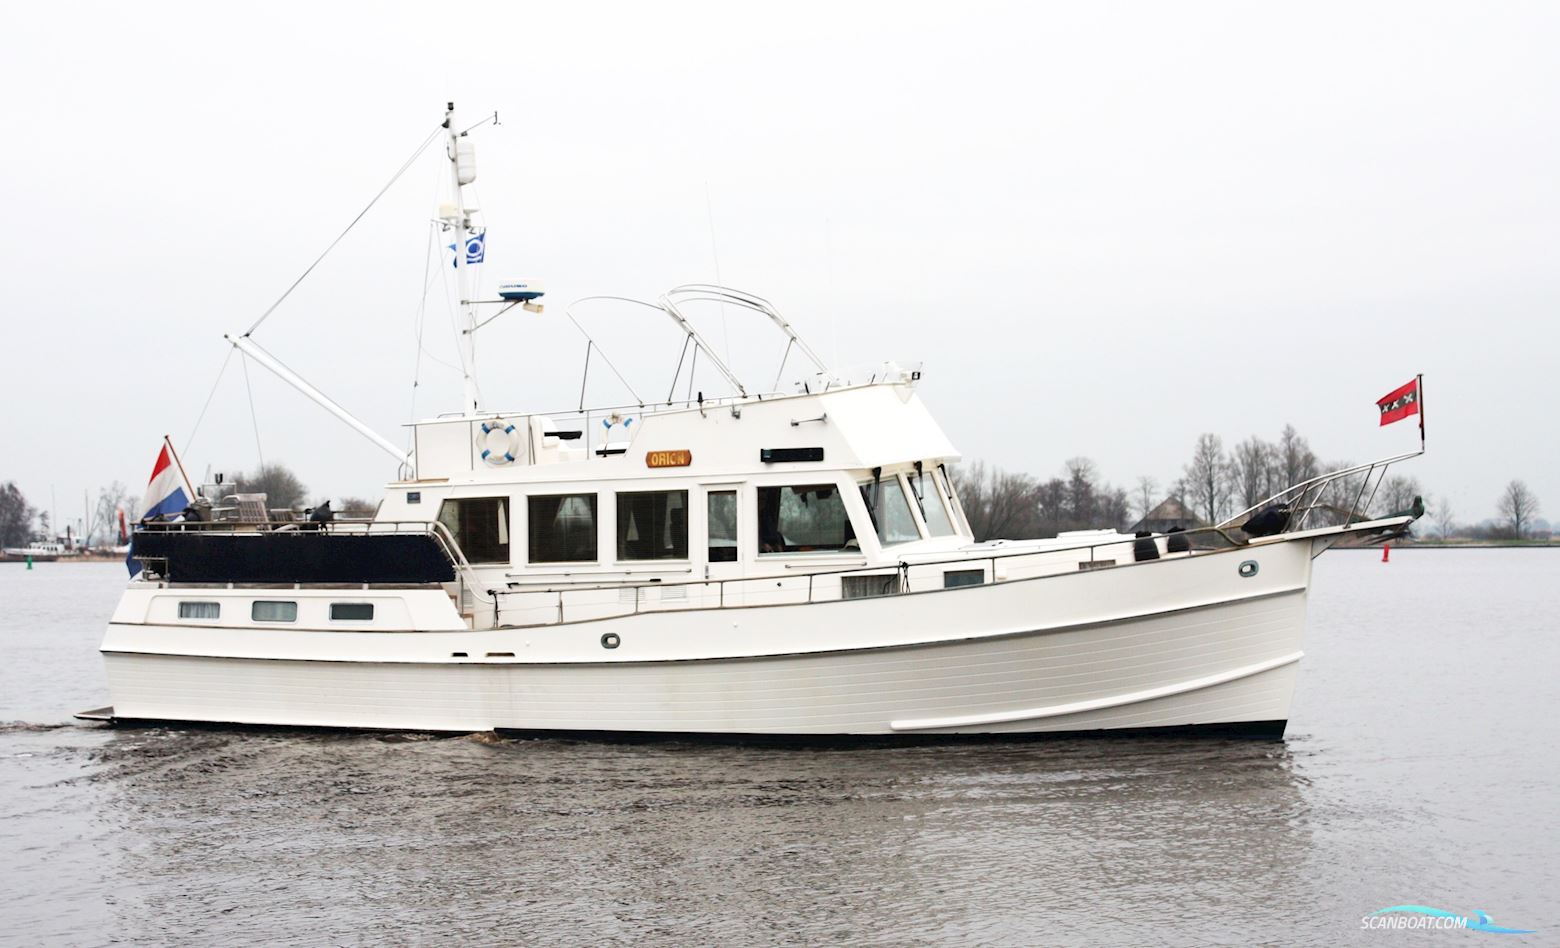 Grand Banks 49 Stabilizers Motorbåt 1991, med Caterpillar motor, Holland